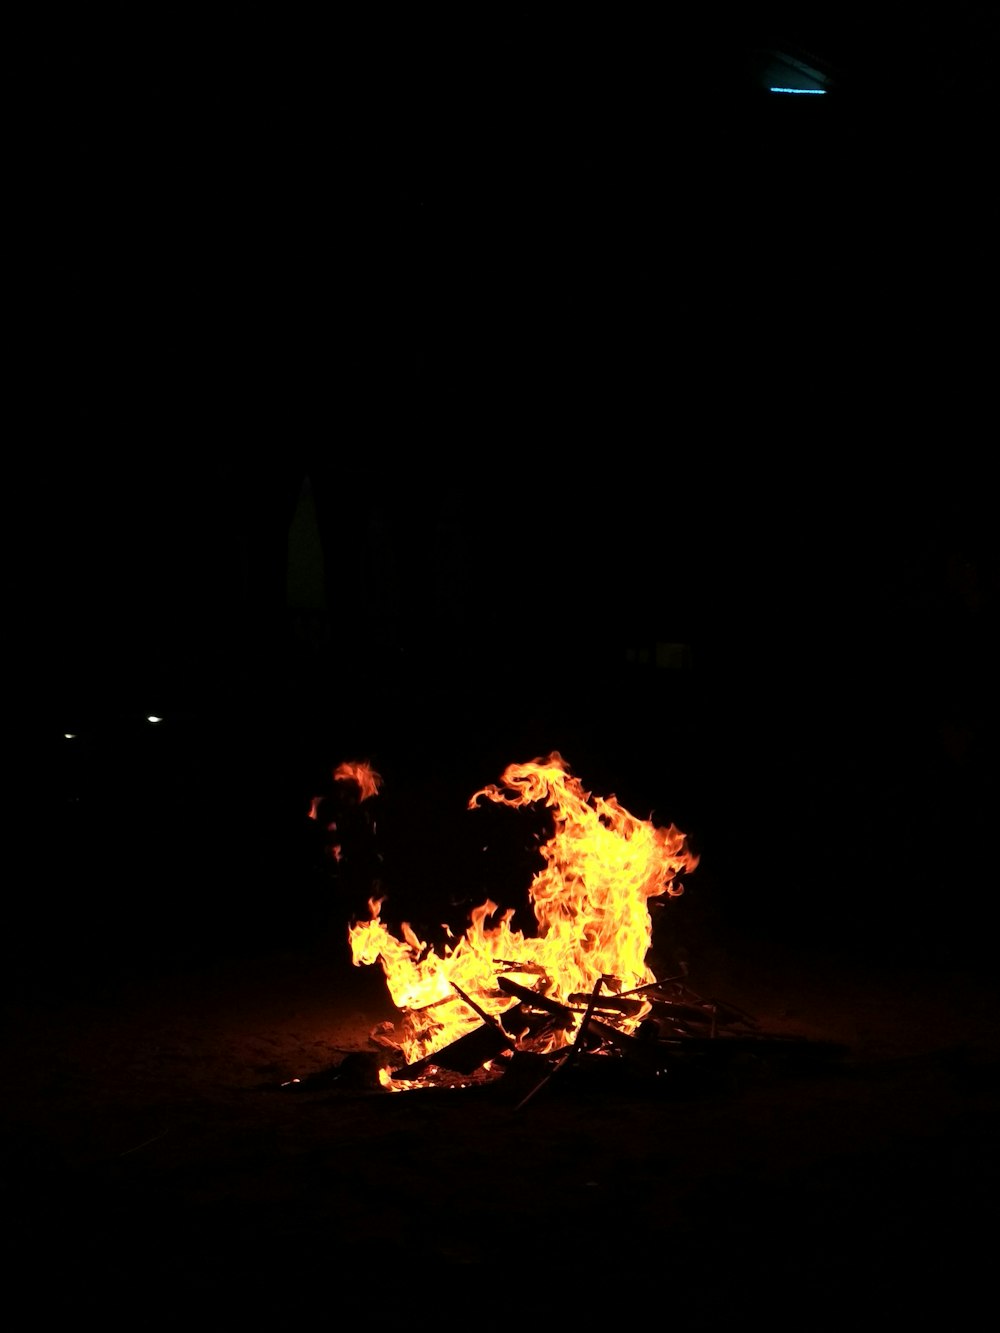 time-lapse photography of burning bonfire